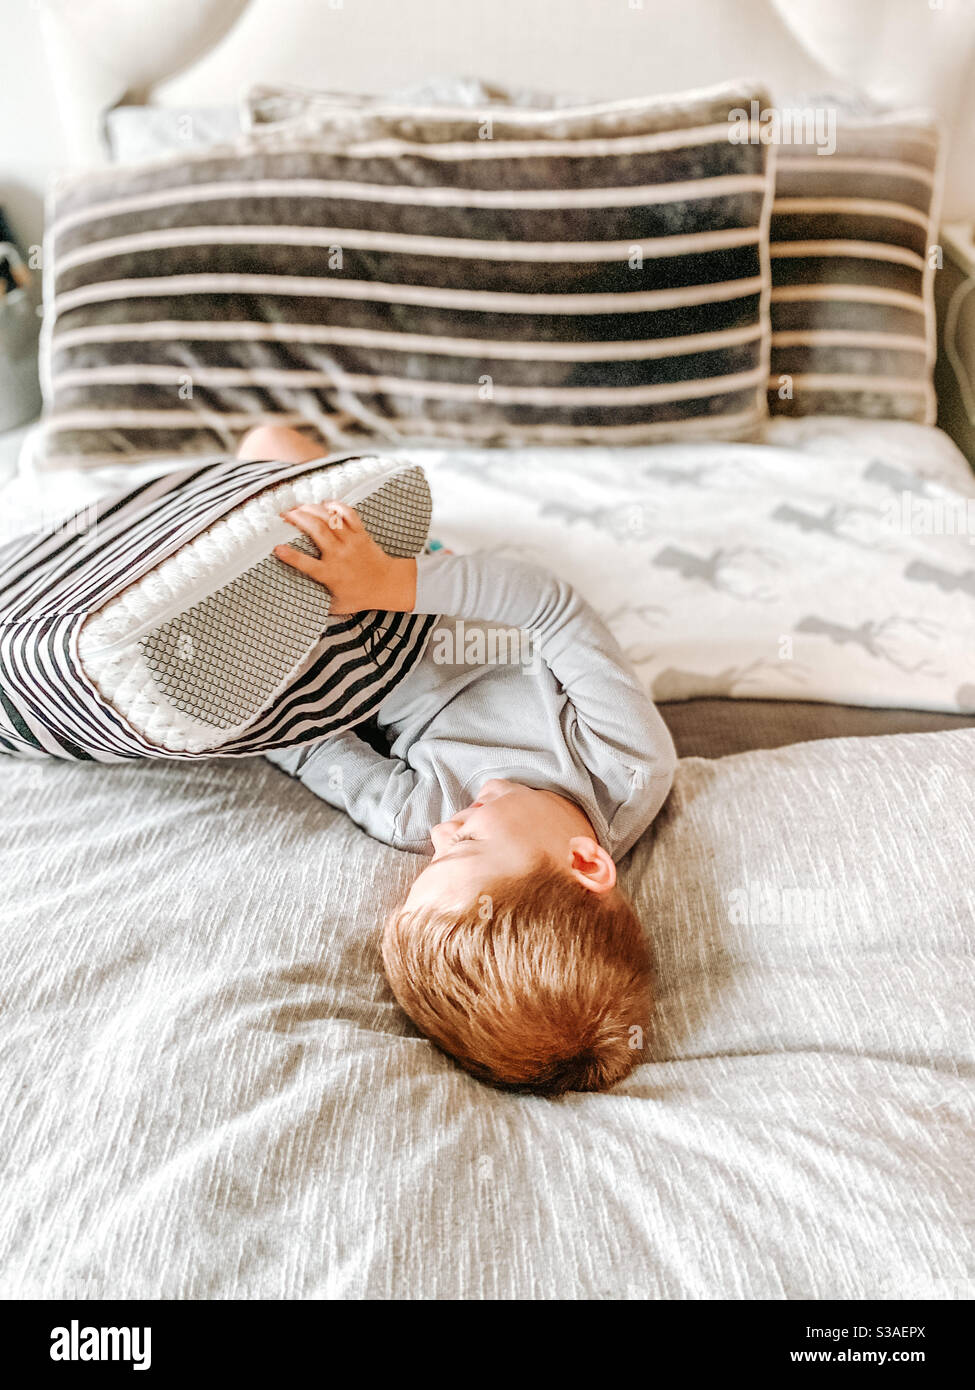 Junge spielt mit einem Kissen auf einem Bett Stockfoto